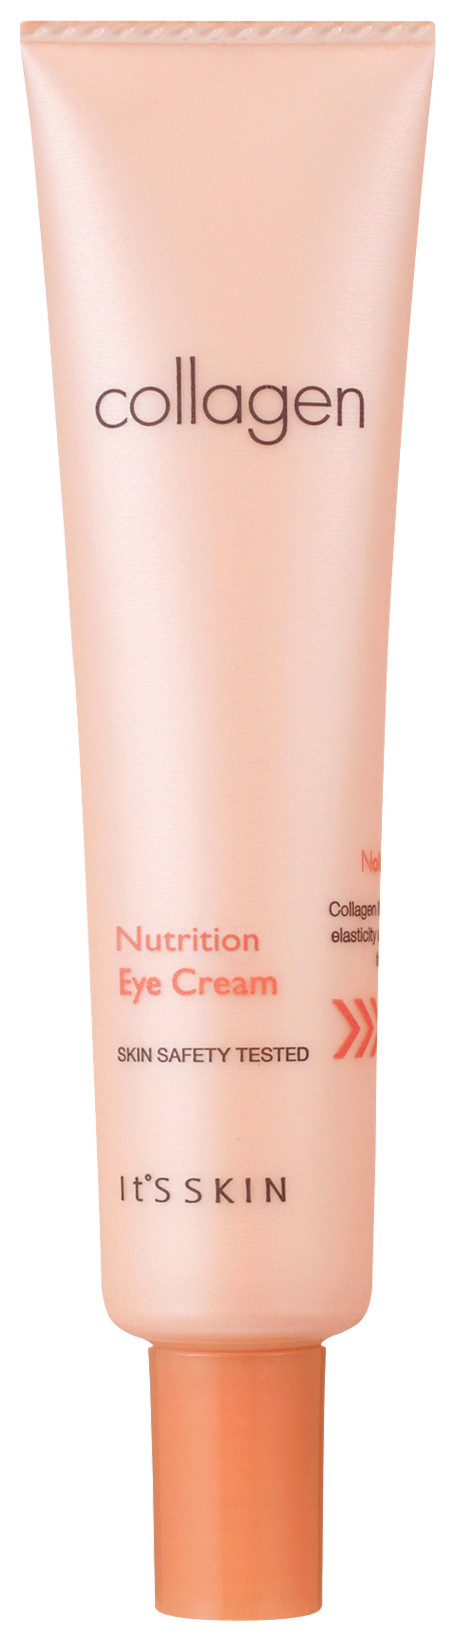 Питательный крем для глаз "Collagen Nutrition Eye Cream" отзывы